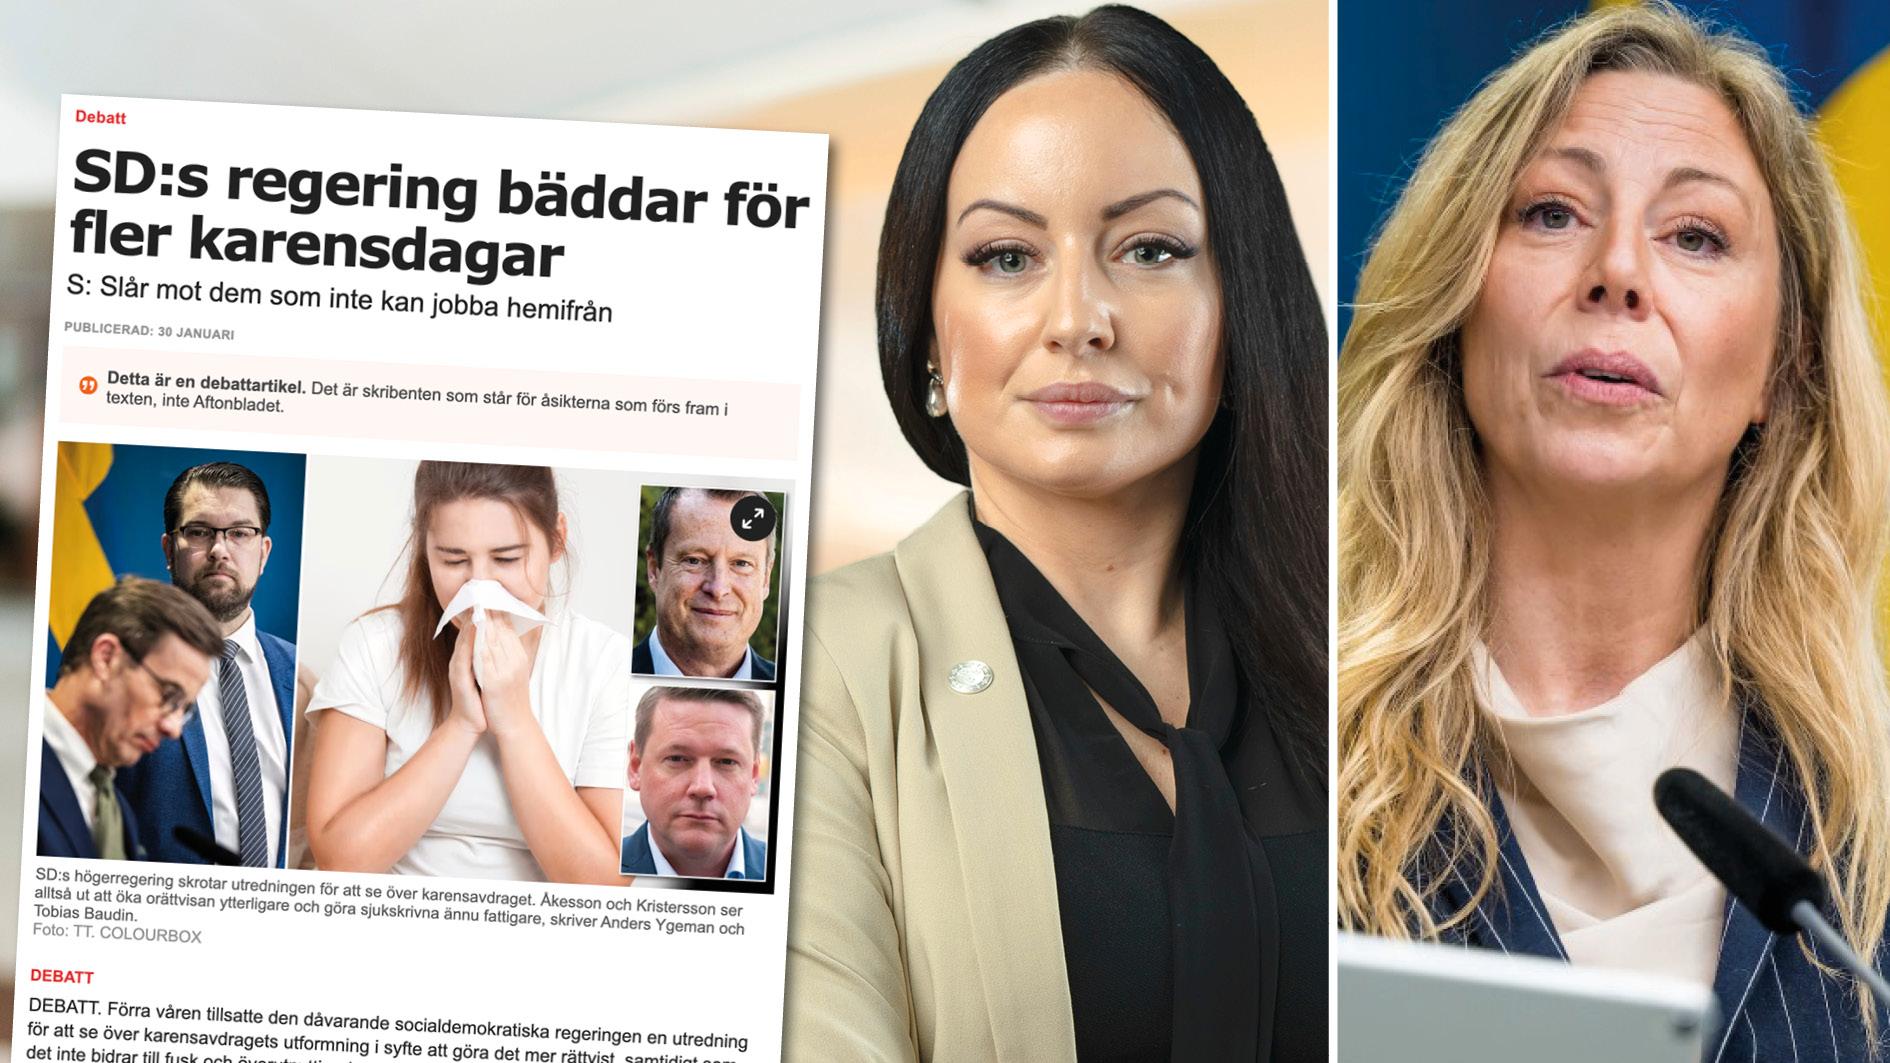 Socialdemokraterna att påstå att ”Sverigedemokraterna ger sitt godkännande” till att regeringen initialt skrotade karensutredningen. Det är falskt, Anders Ygeman ljuger igen. Replik från Clara Aranda och Linda Lindberg.